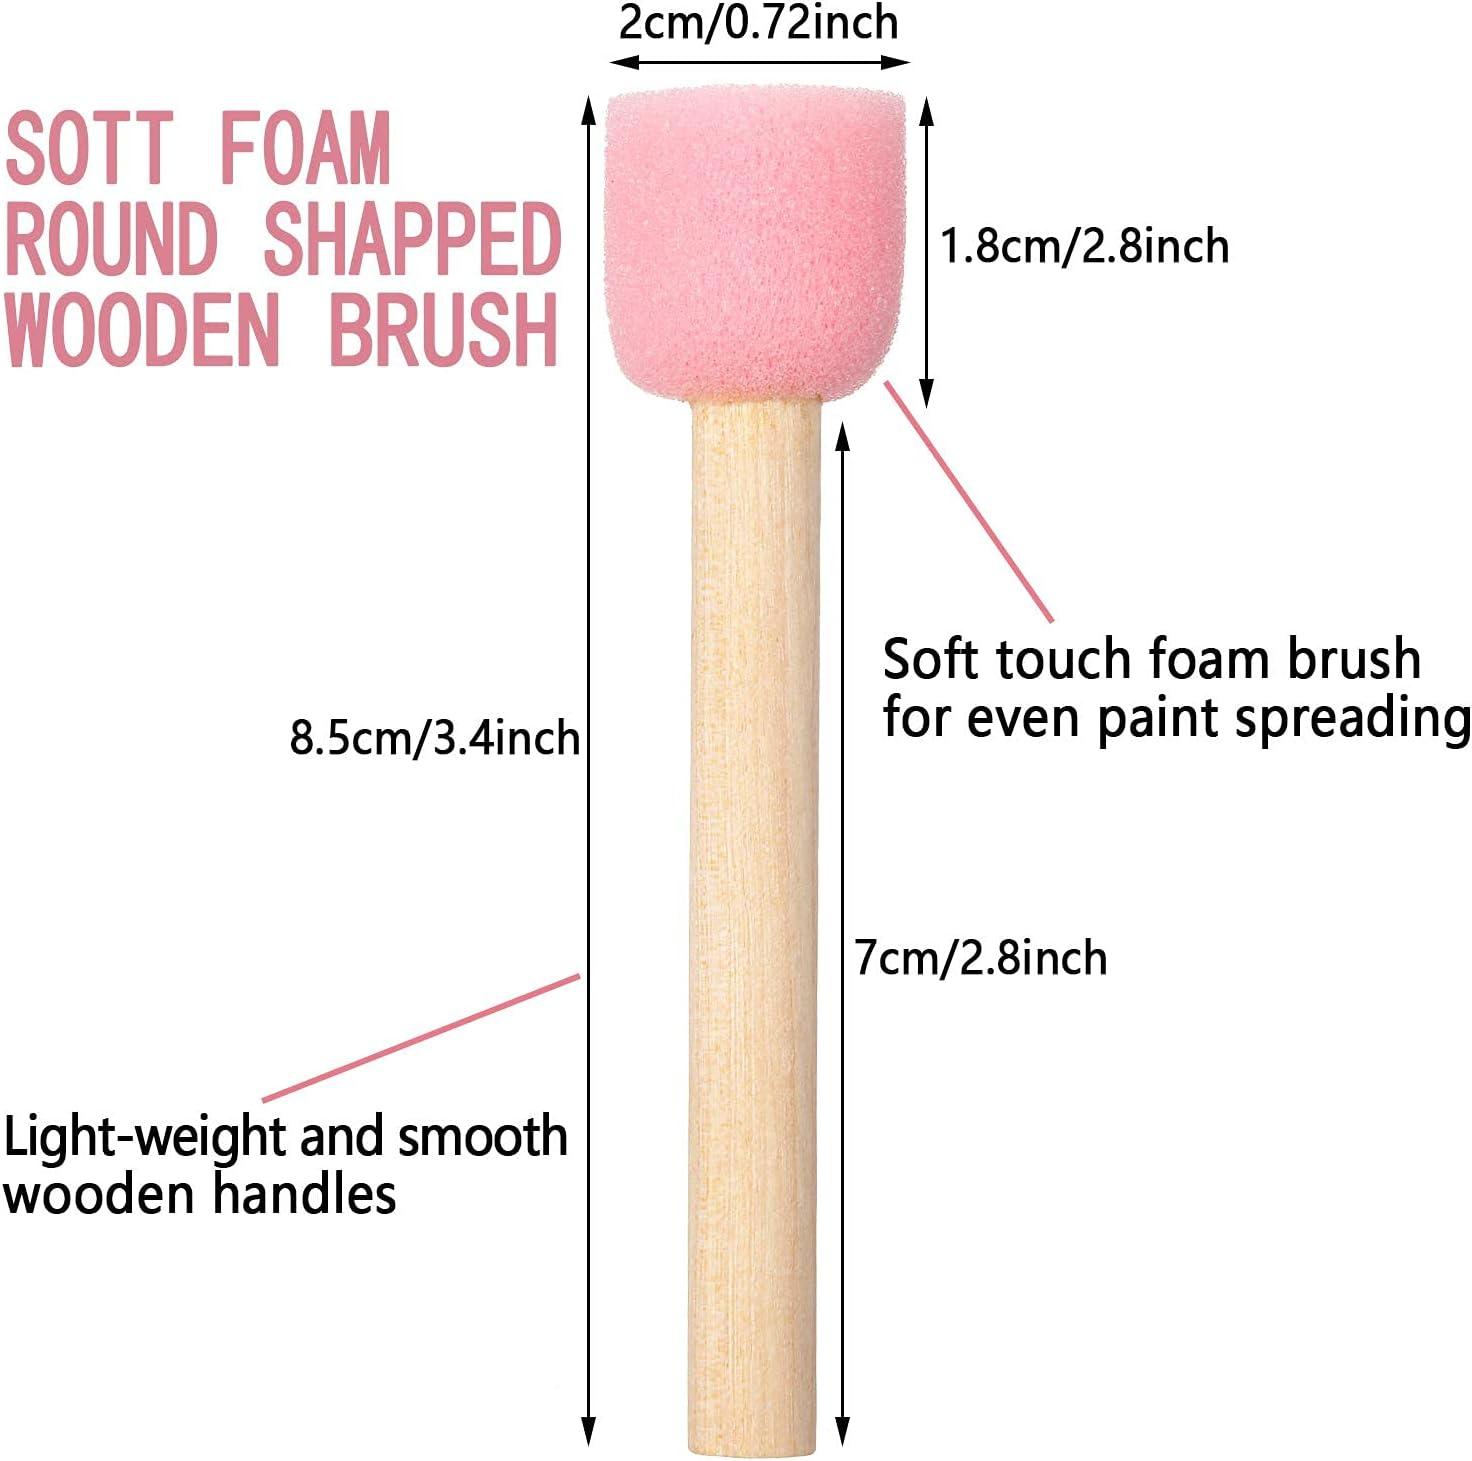  40 Pieces Round Sponge Foam Brush Set Paint Sponge